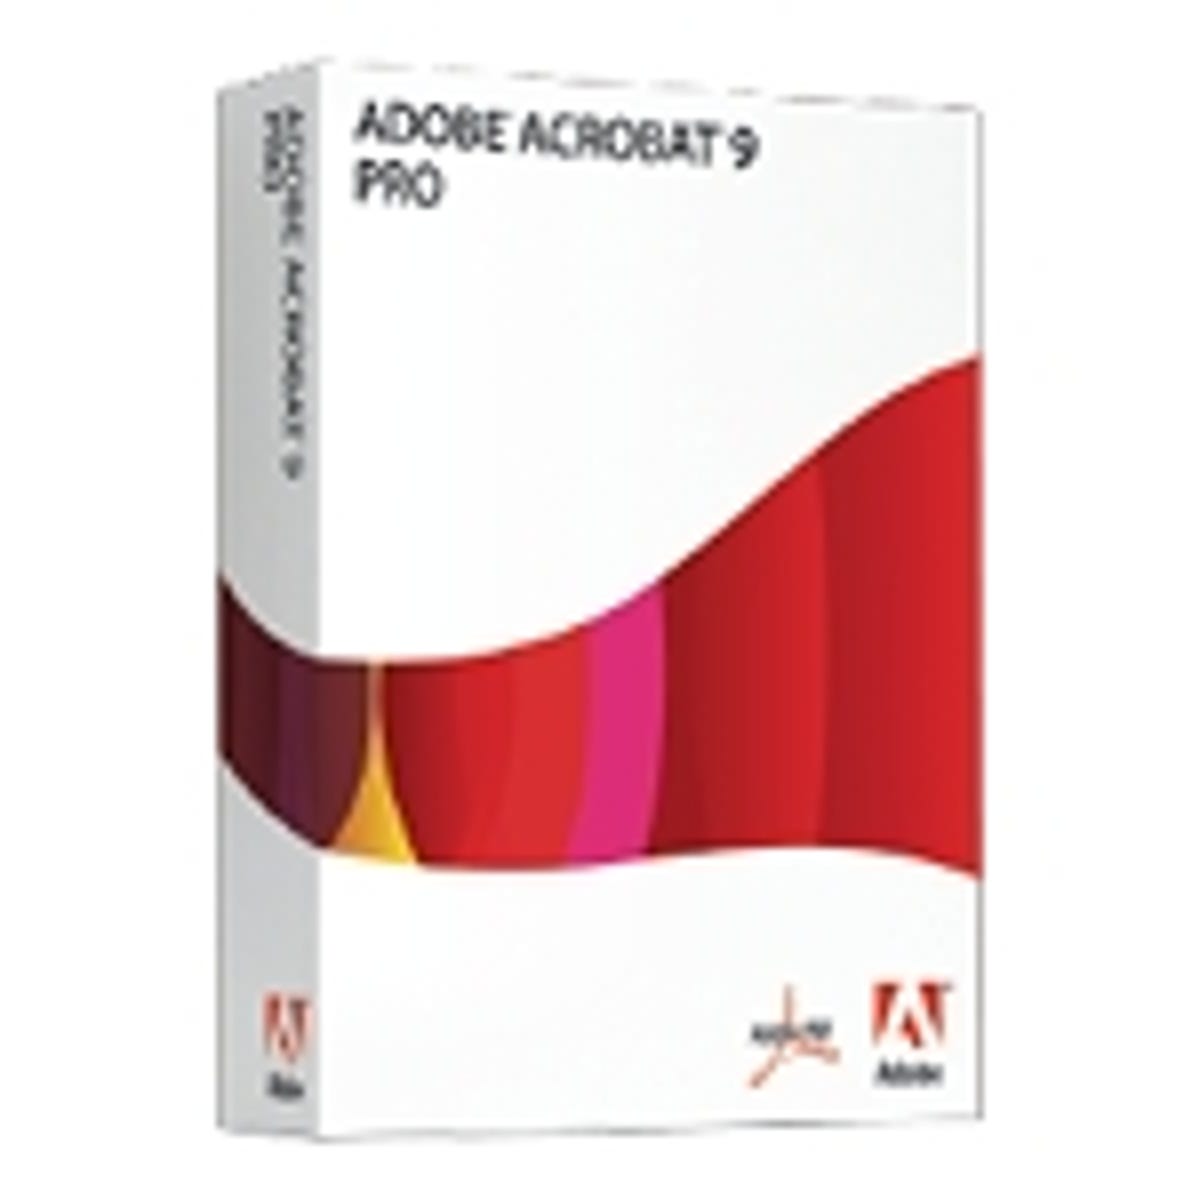 adobe acrobat 9 standard free download full version